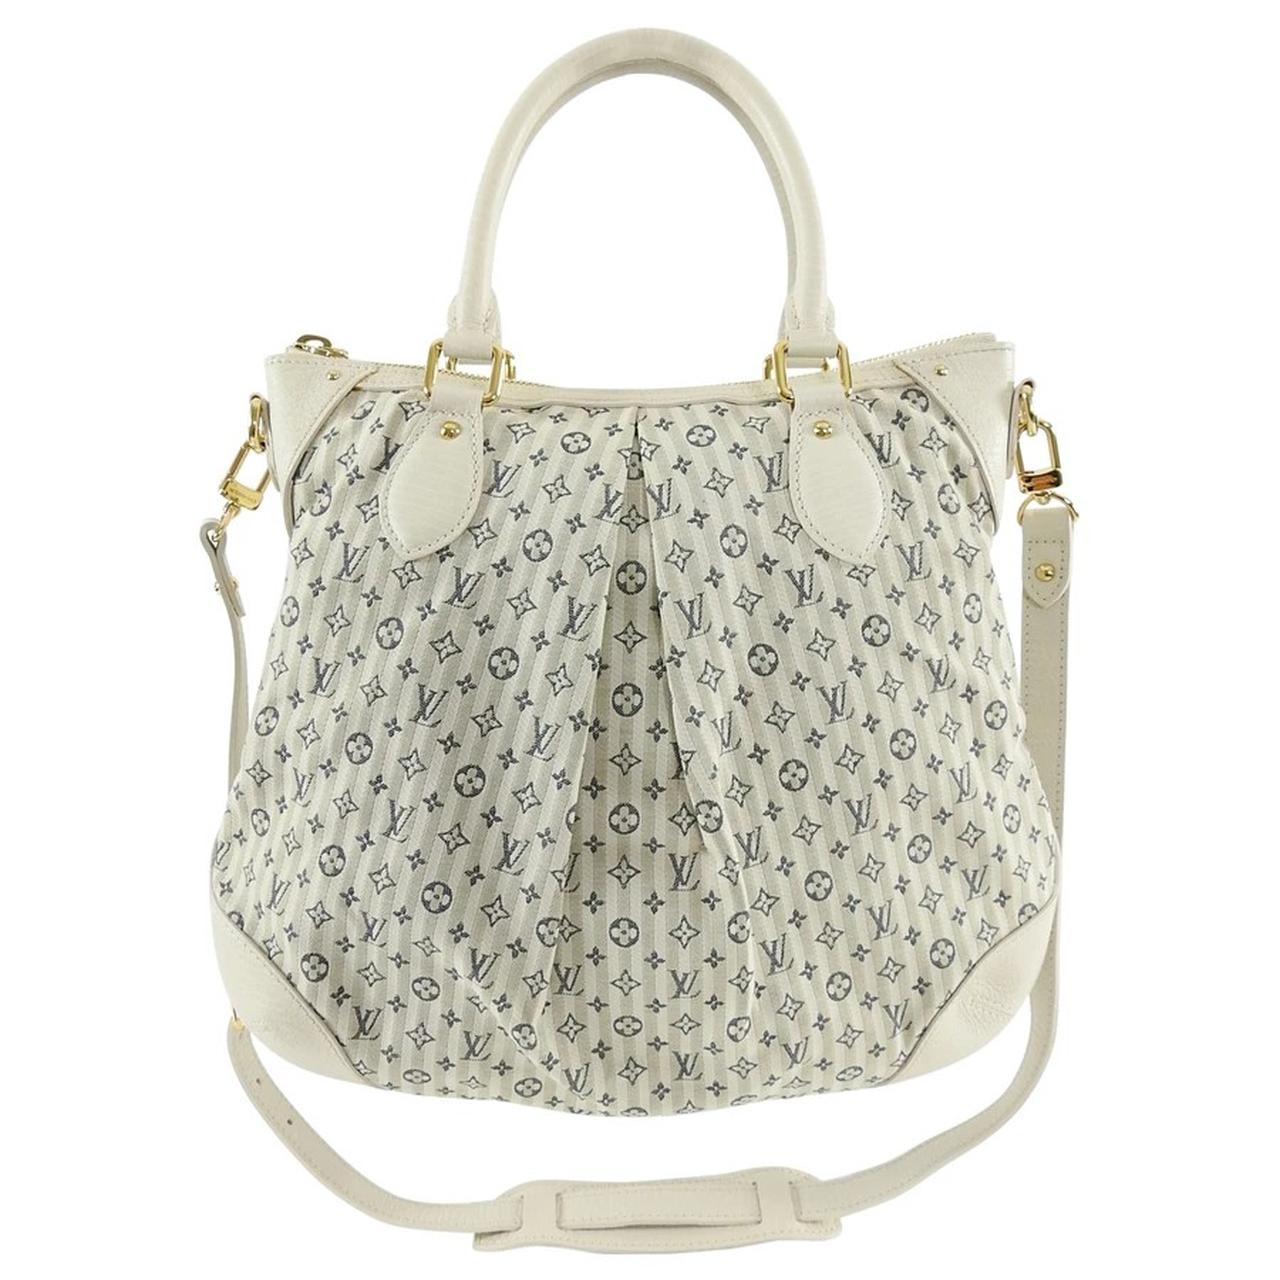 Beautiful Louis Vuitton💕 Croisette Handbag! Super - Depop